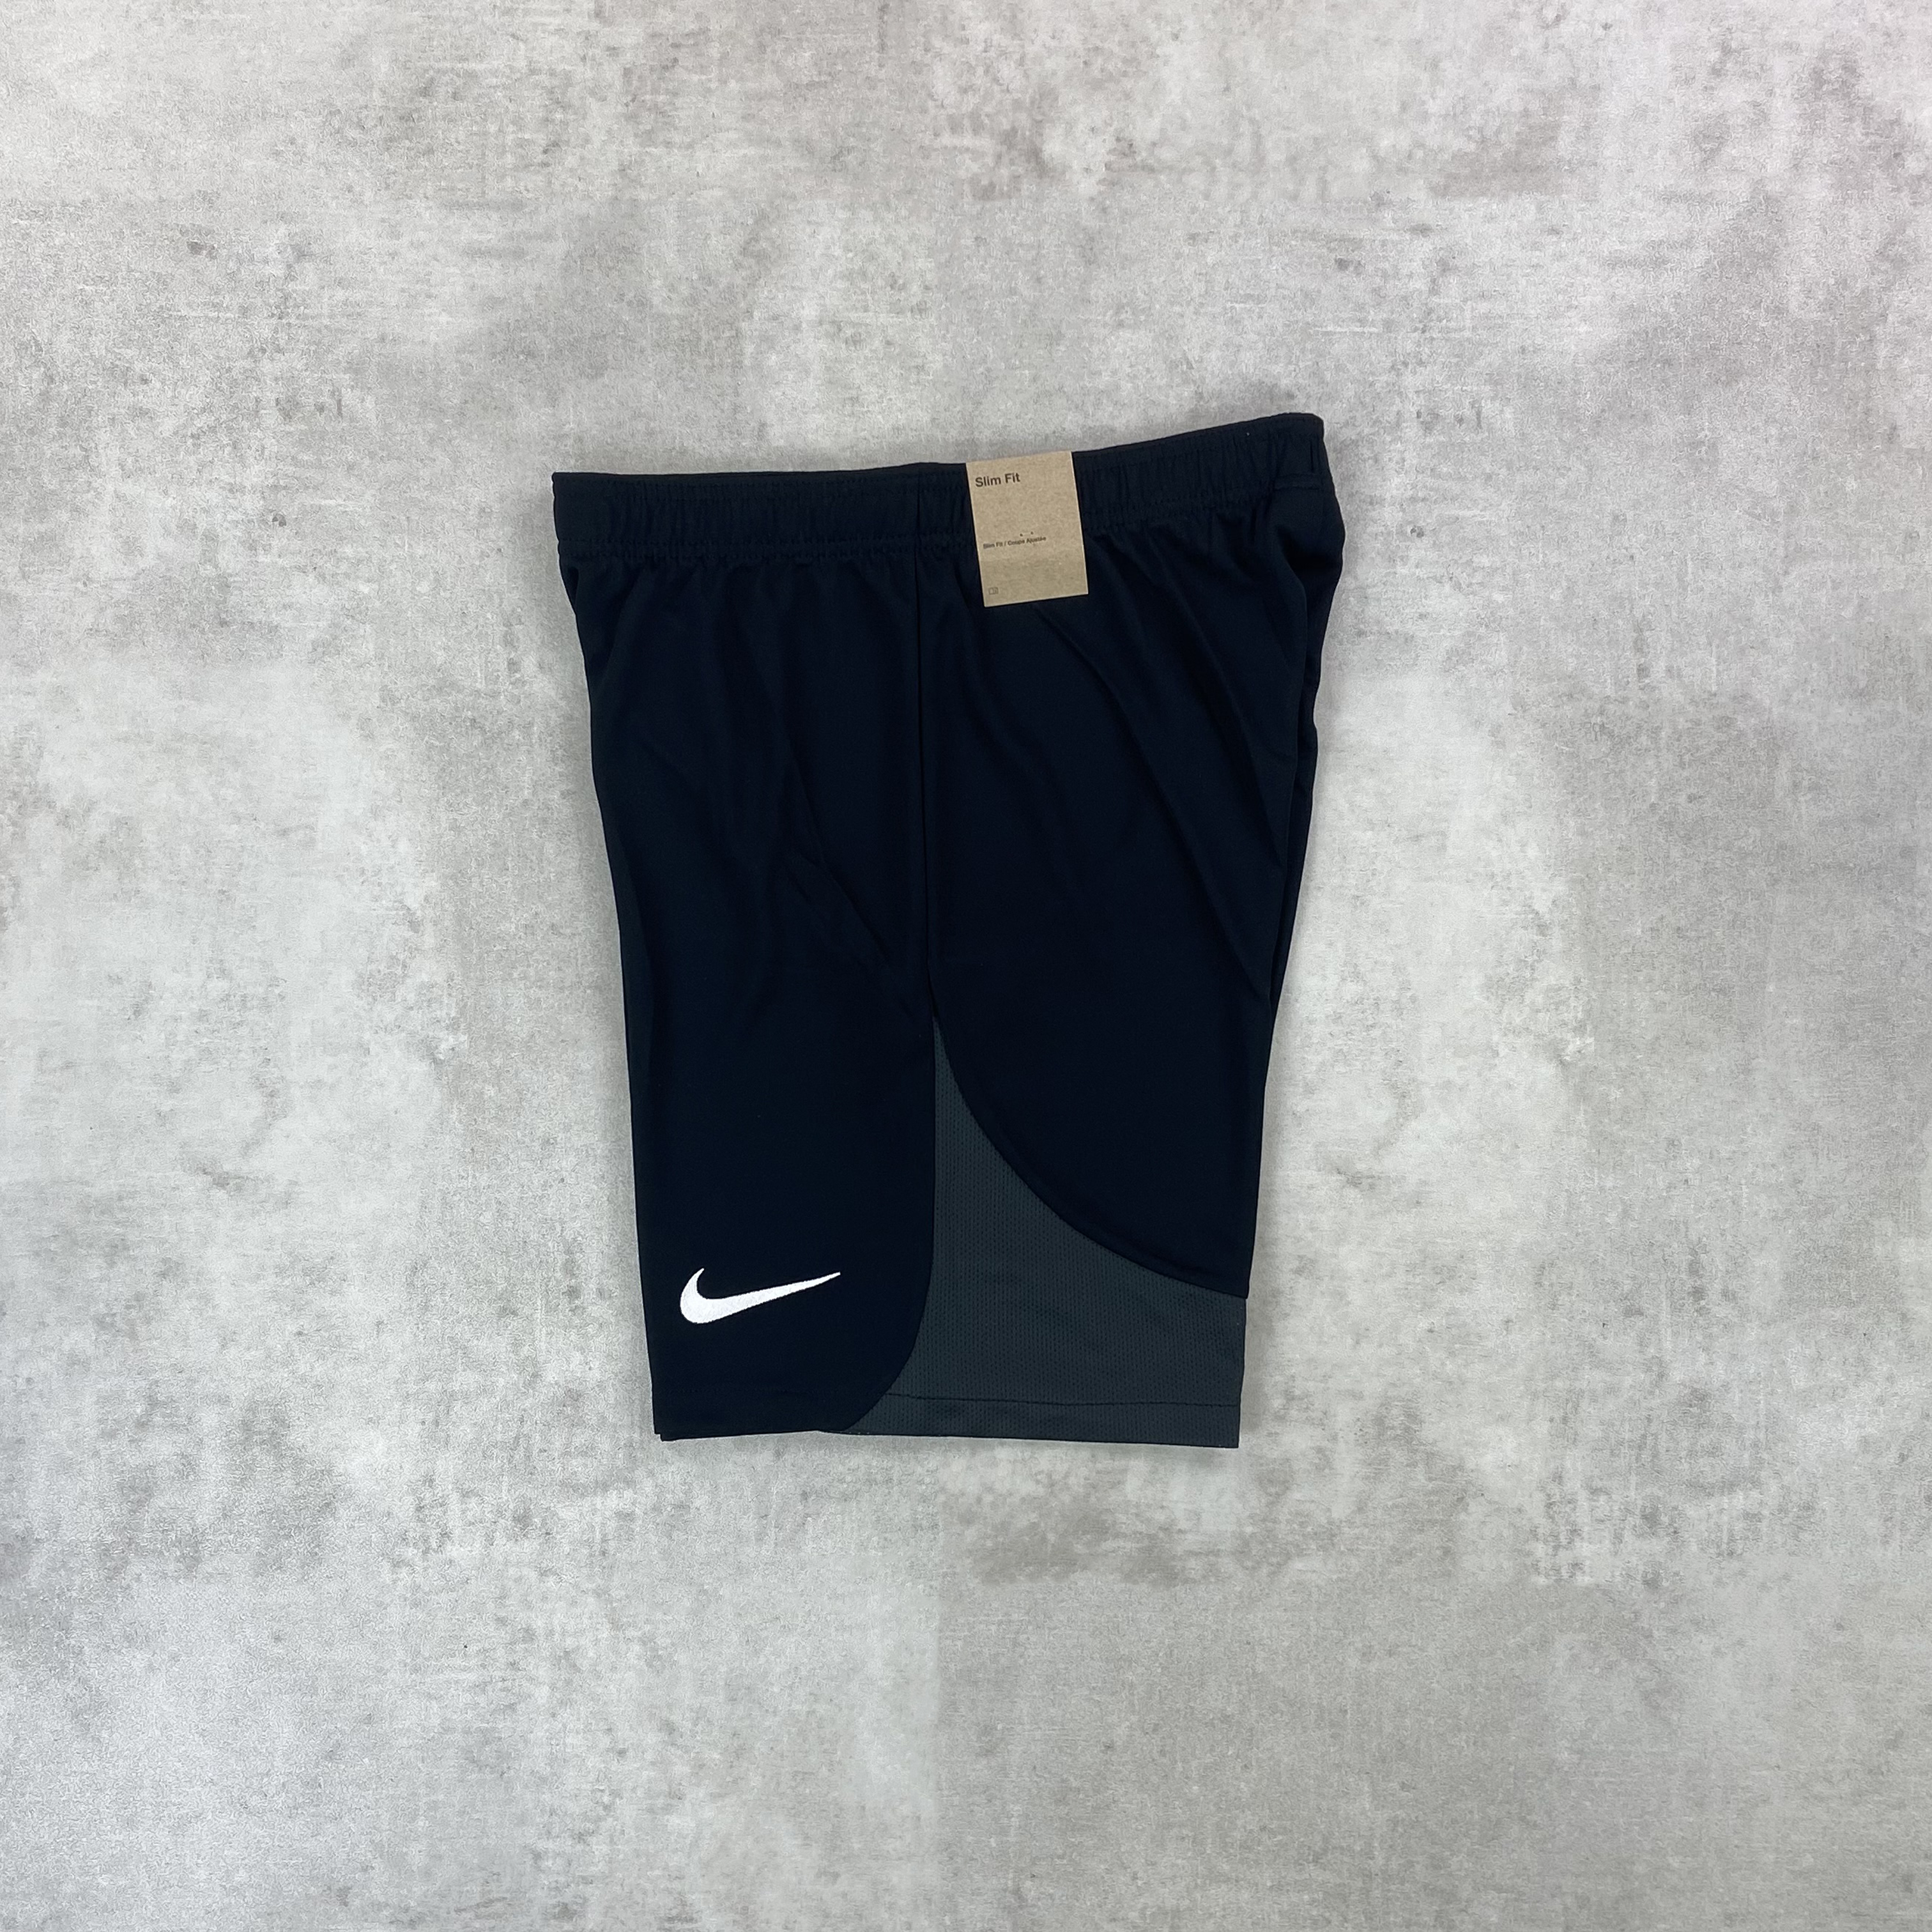 Nike Academy Pro Shorts Black/ Anthracite